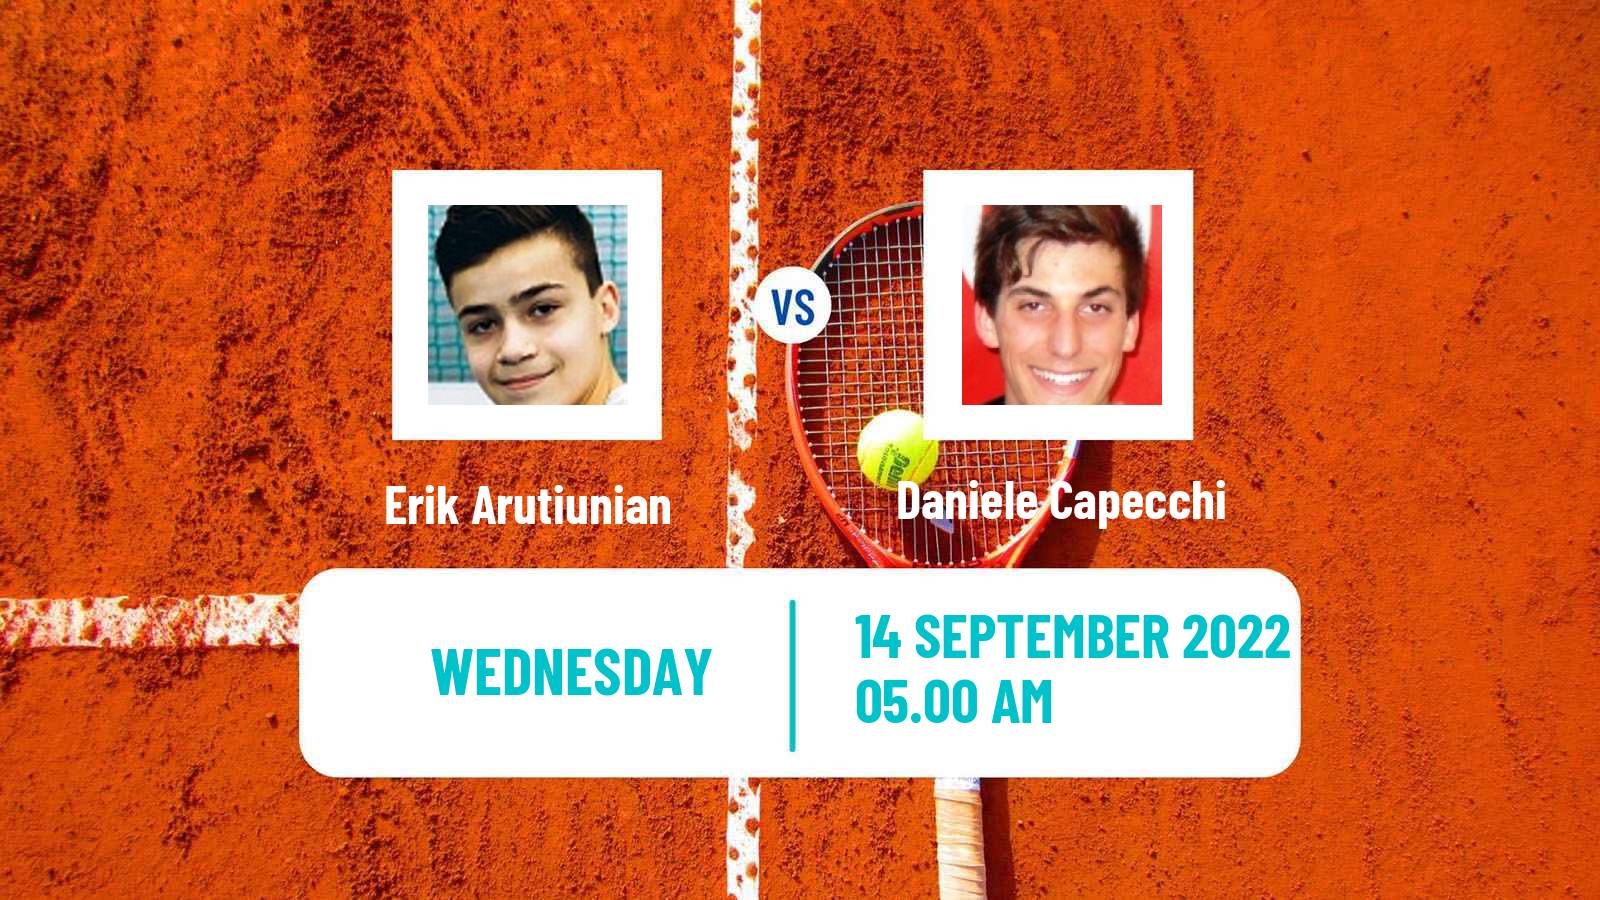 Tennis ITF Tournaments Erik Arutiunian - Daniele Capecchi